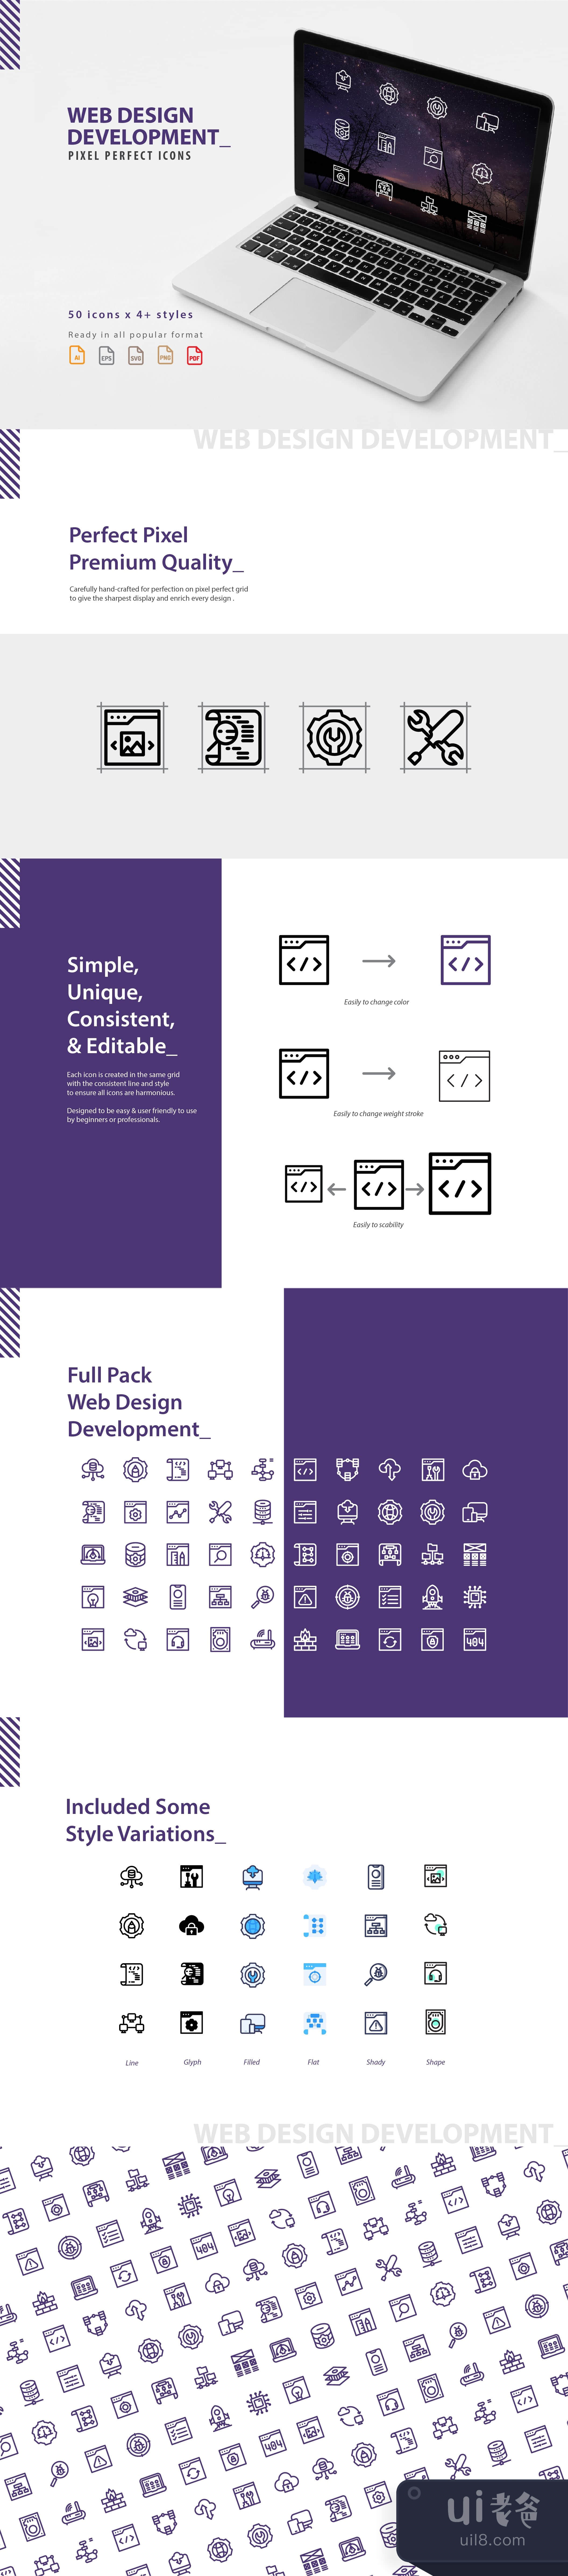 网页设计开发图标集 (Web Design Development Icons Set)插图